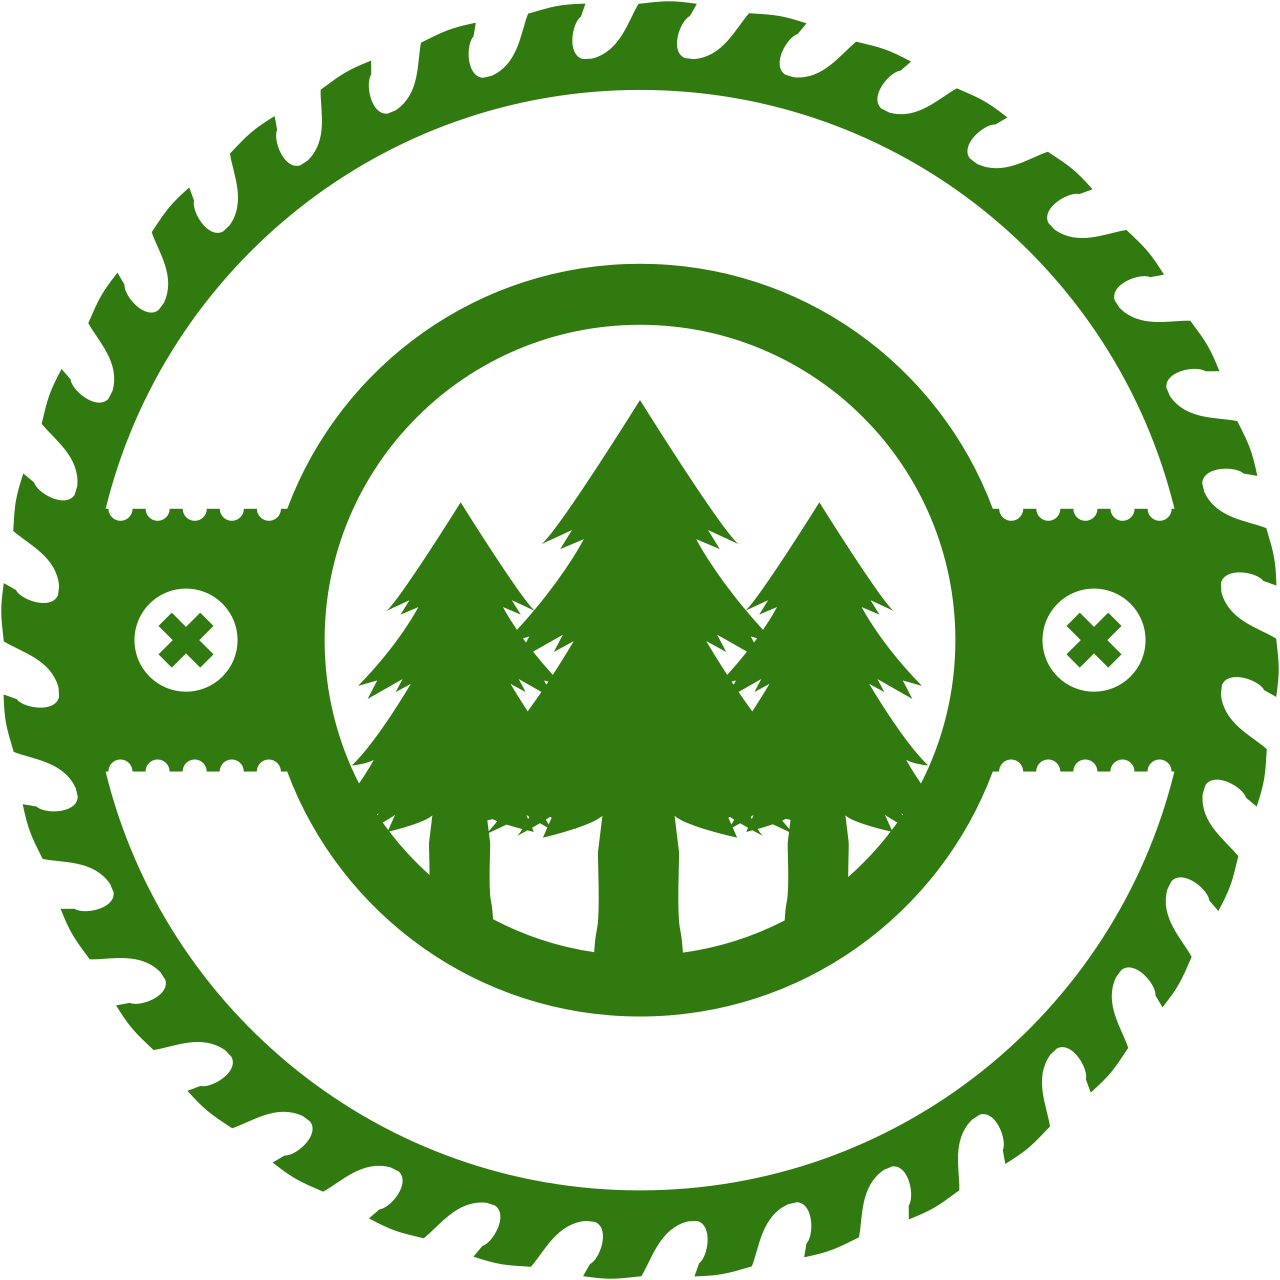 CASTON FARMS's web page